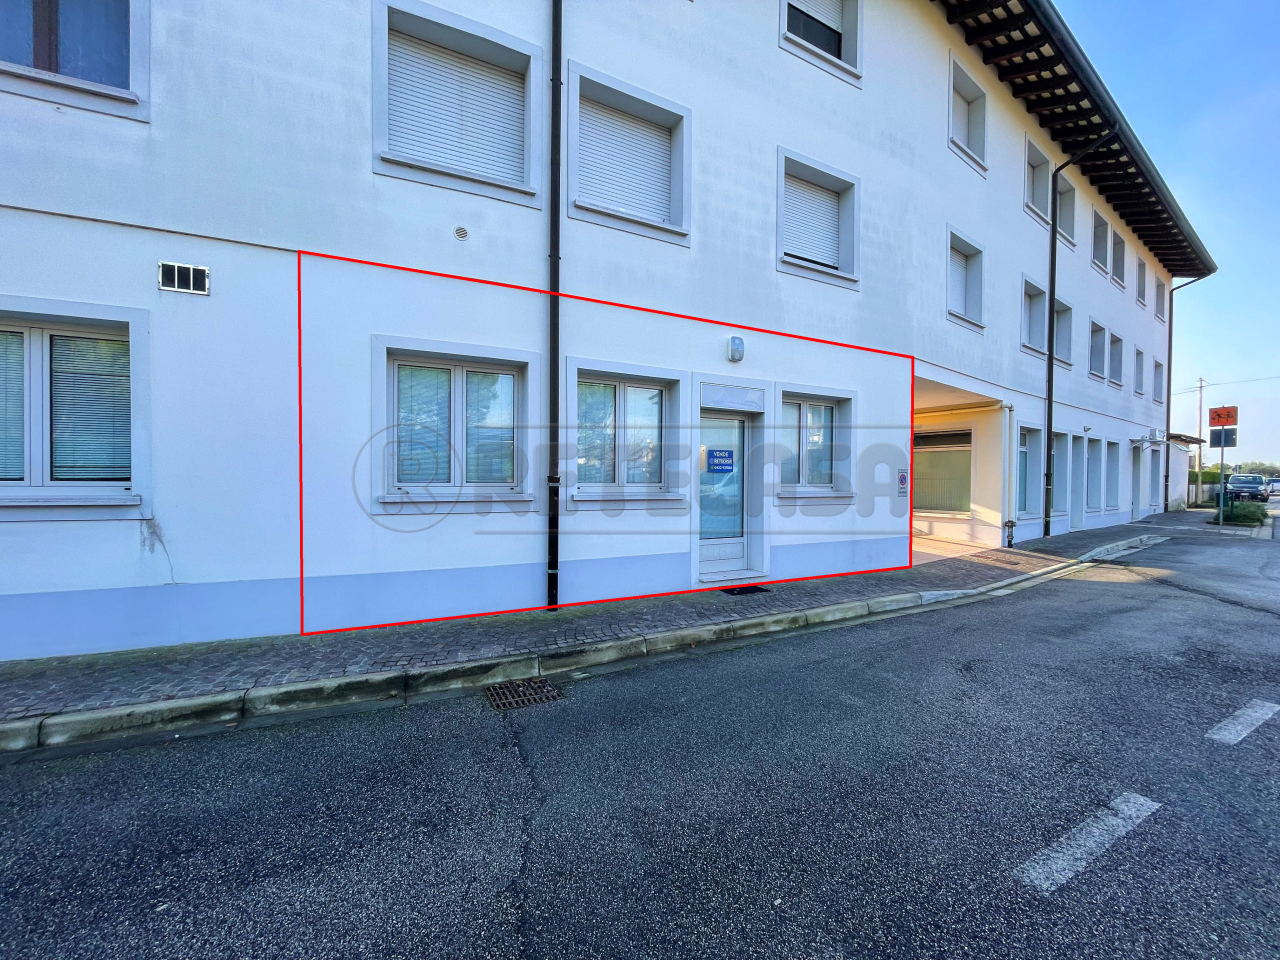 Ufficio / Studio in vendita a San Giorgio di Nogaro, 2 locali, prezzo € 59.000 | PortaleAgenzieImmobiliari.it